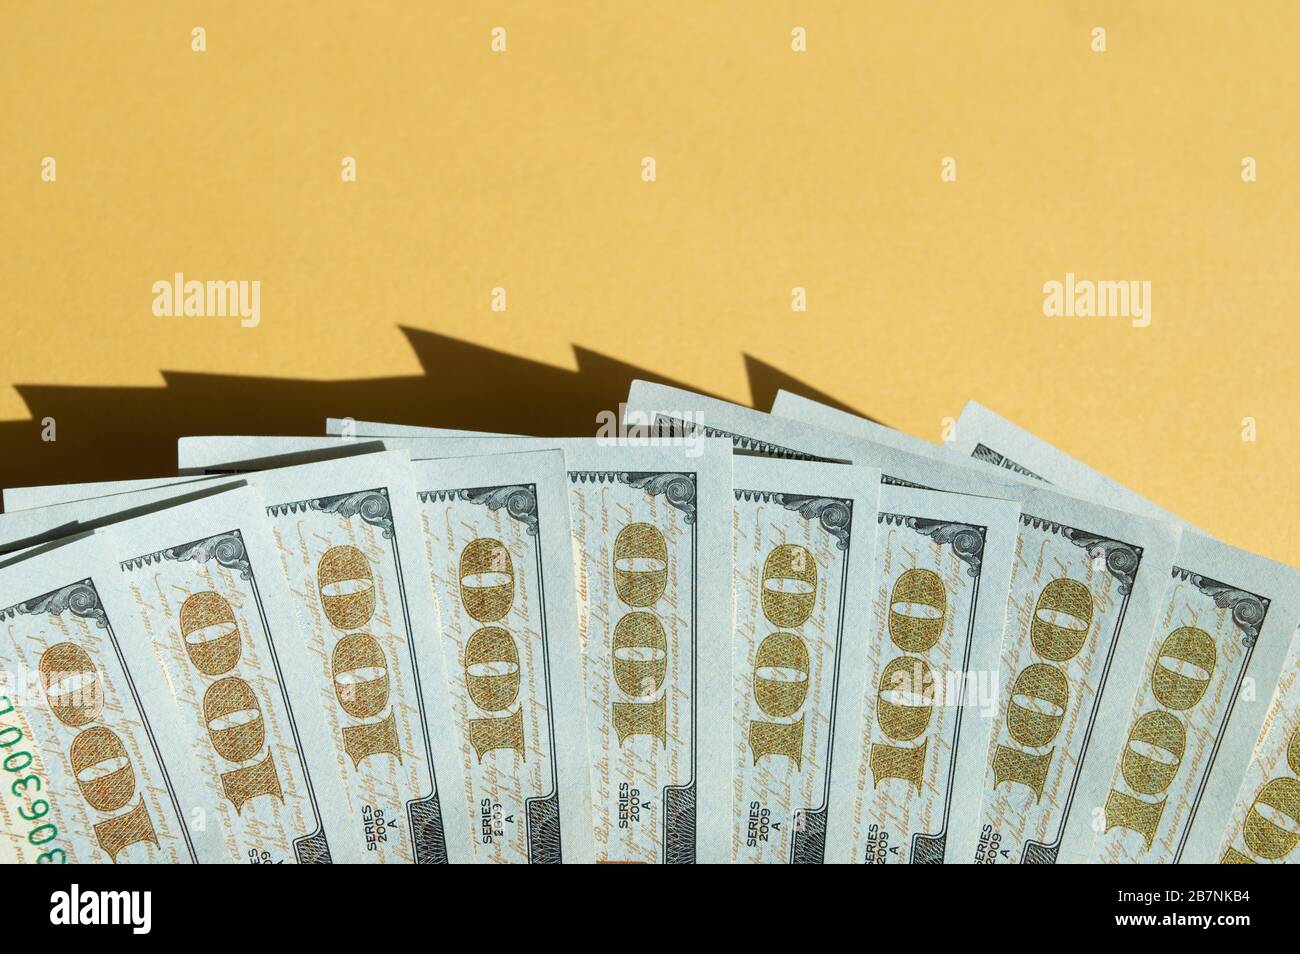 Dix factures de 100 dollars sur fond jaune et bleu. Photo conceptuelle, conception minimaliste de la monnaie des États-Unis Banque D'Images